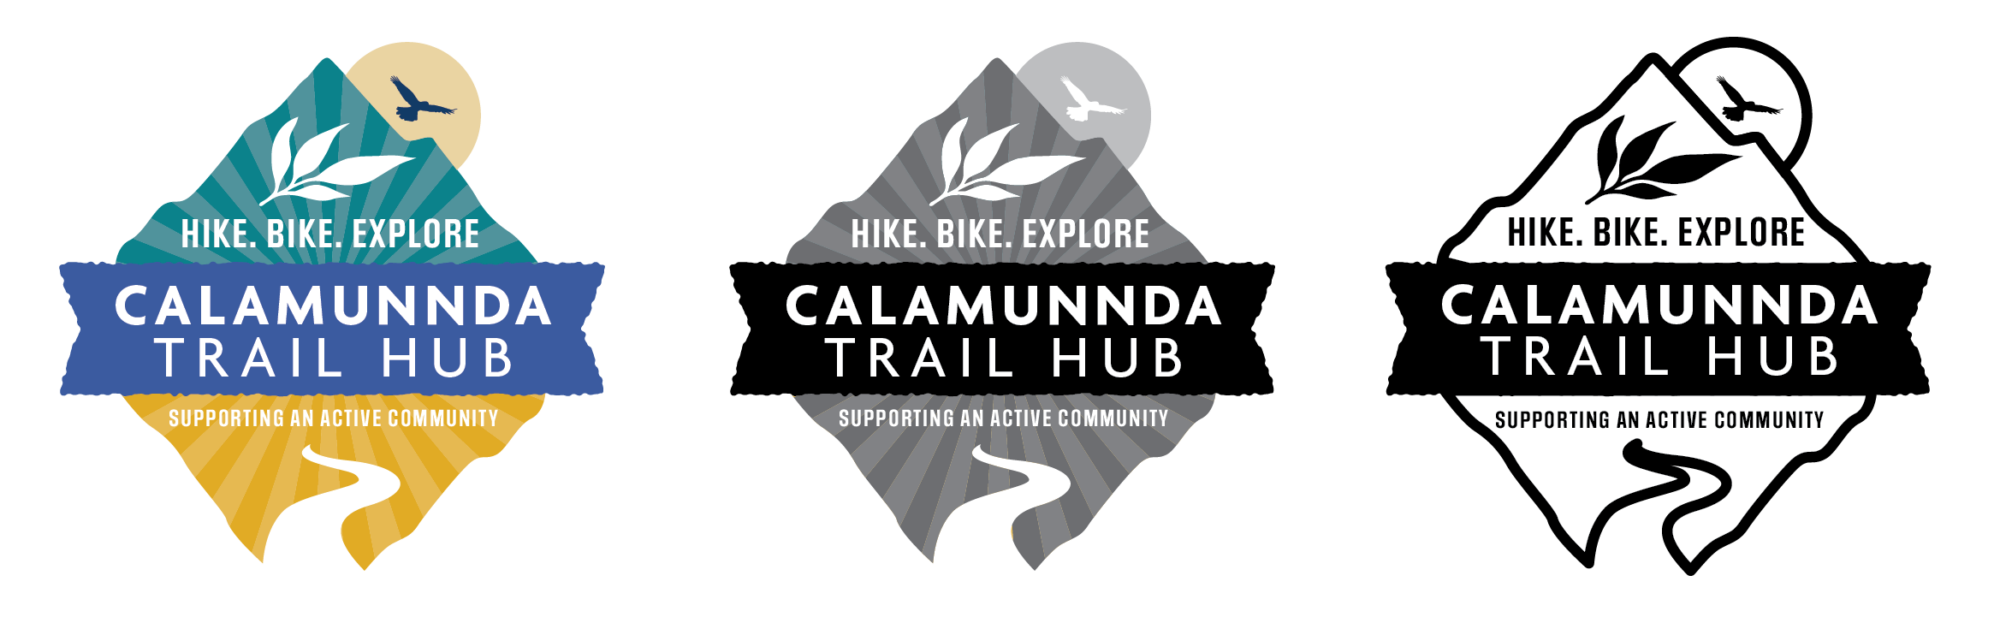 Calamunnda Trail Hub 02